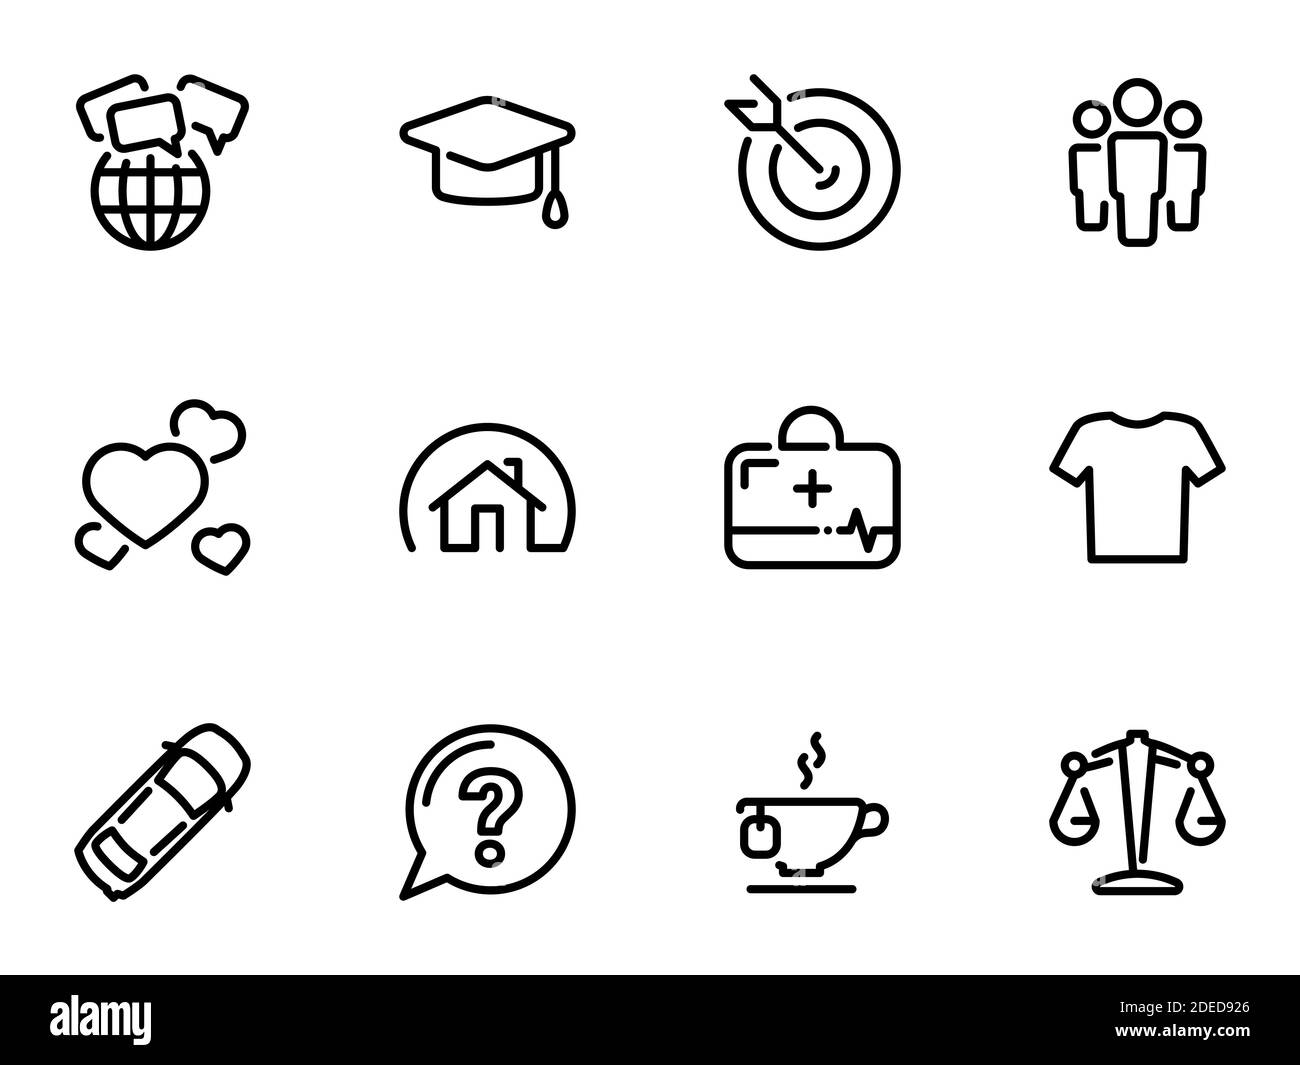 Insieme di icone vettoriali nere, isolate su sfondo bianco, sul tema esigenze umane sociali Illustrazione Vettoriale